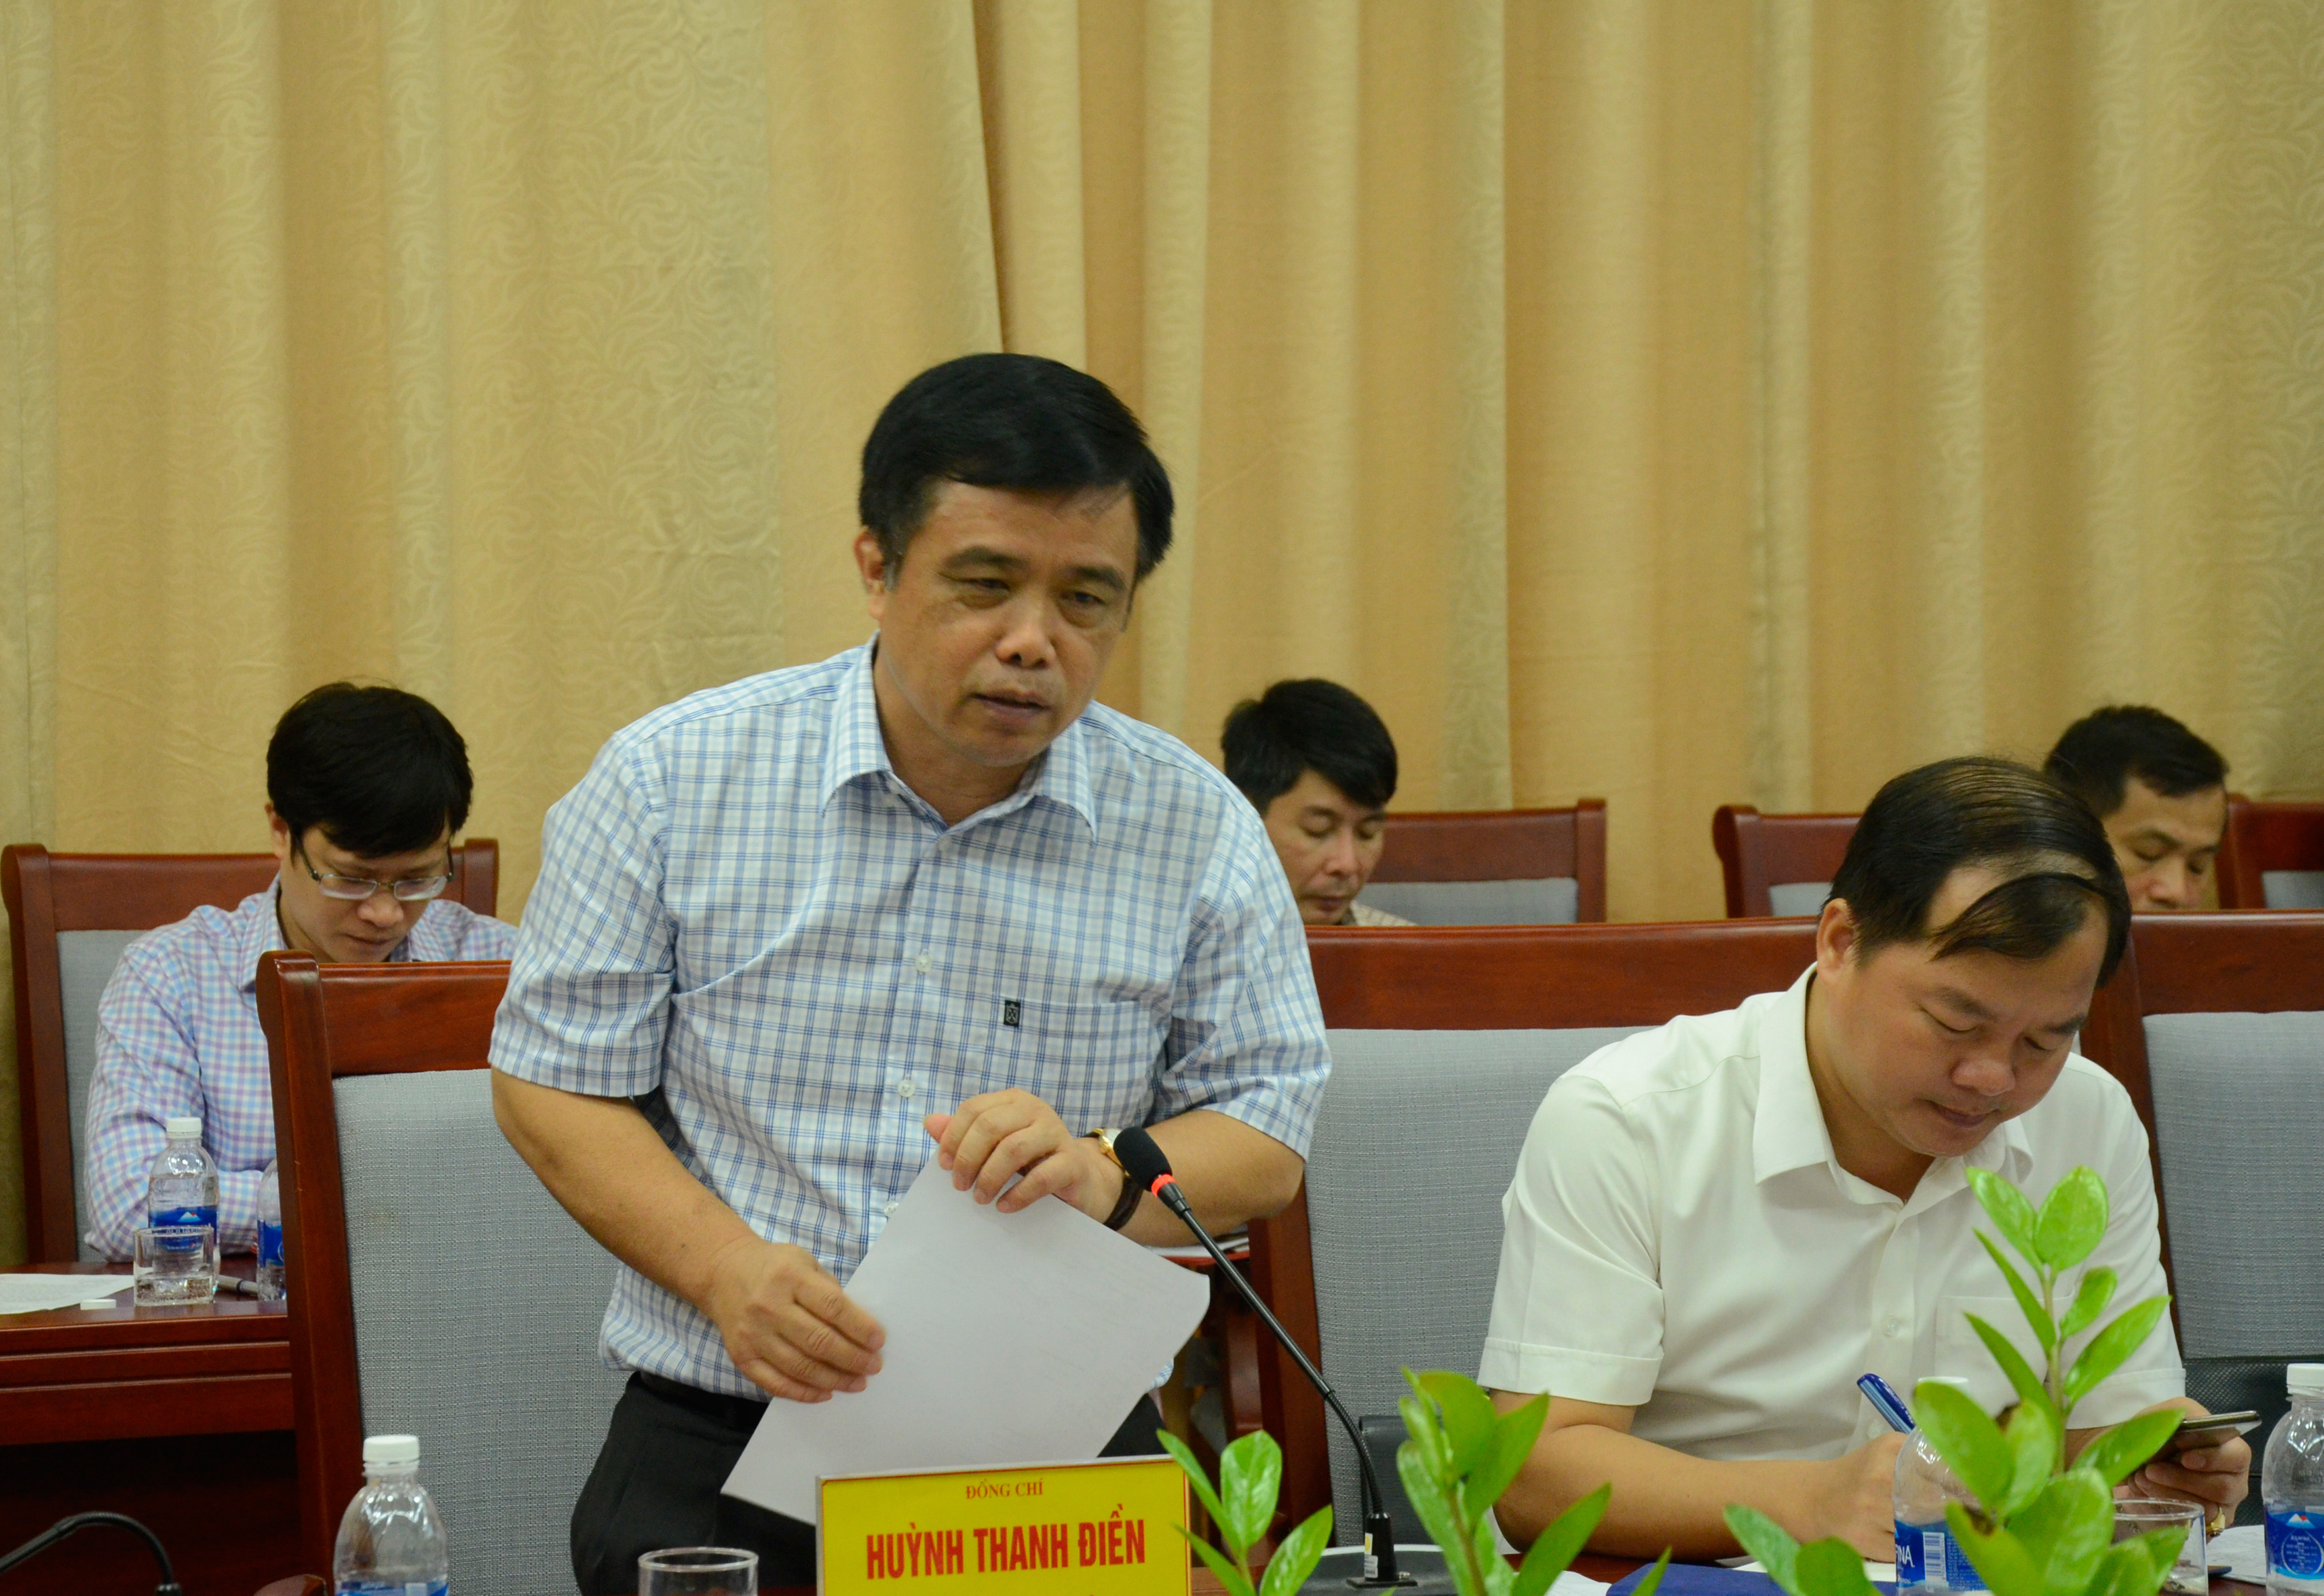 Đồng chí Huỳnh Thanh Điền - Phó Chủ tịch UBND tỉnh khẳng định: